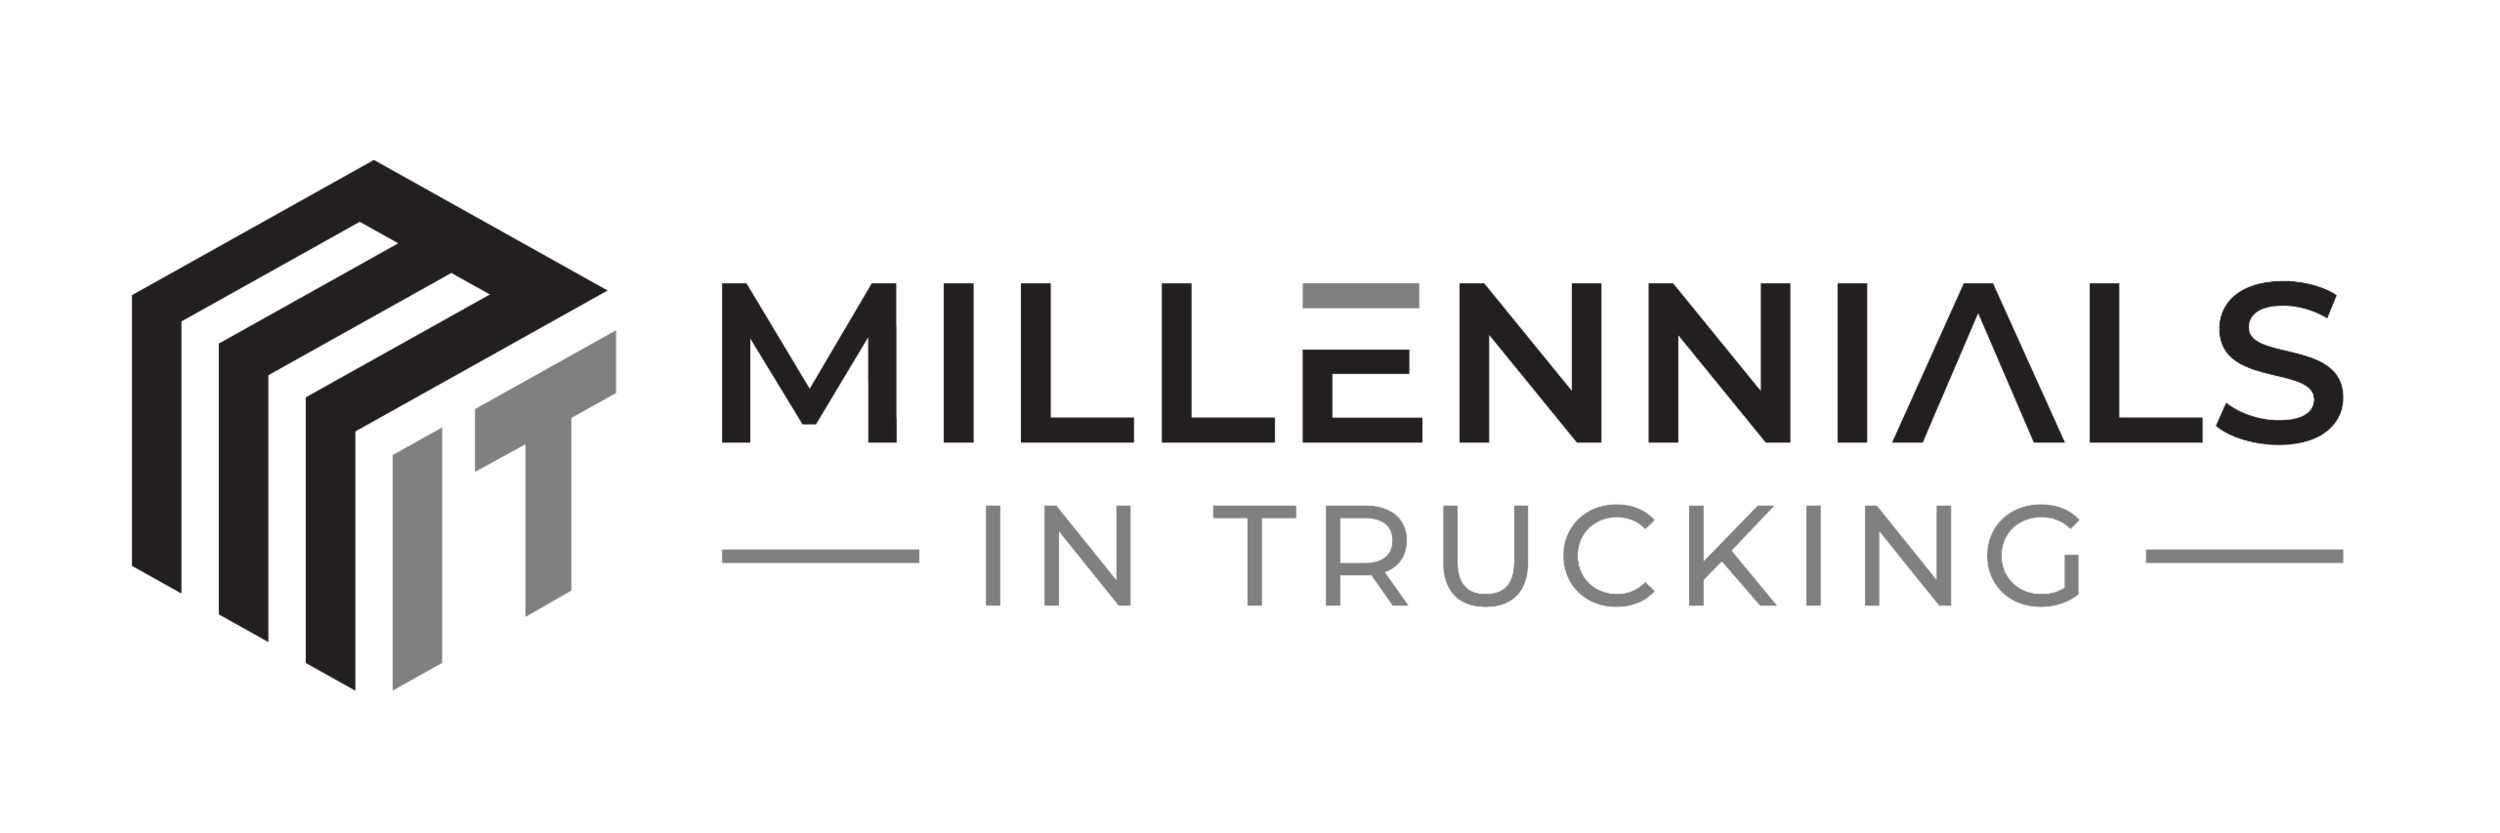 Millennials in Trucking